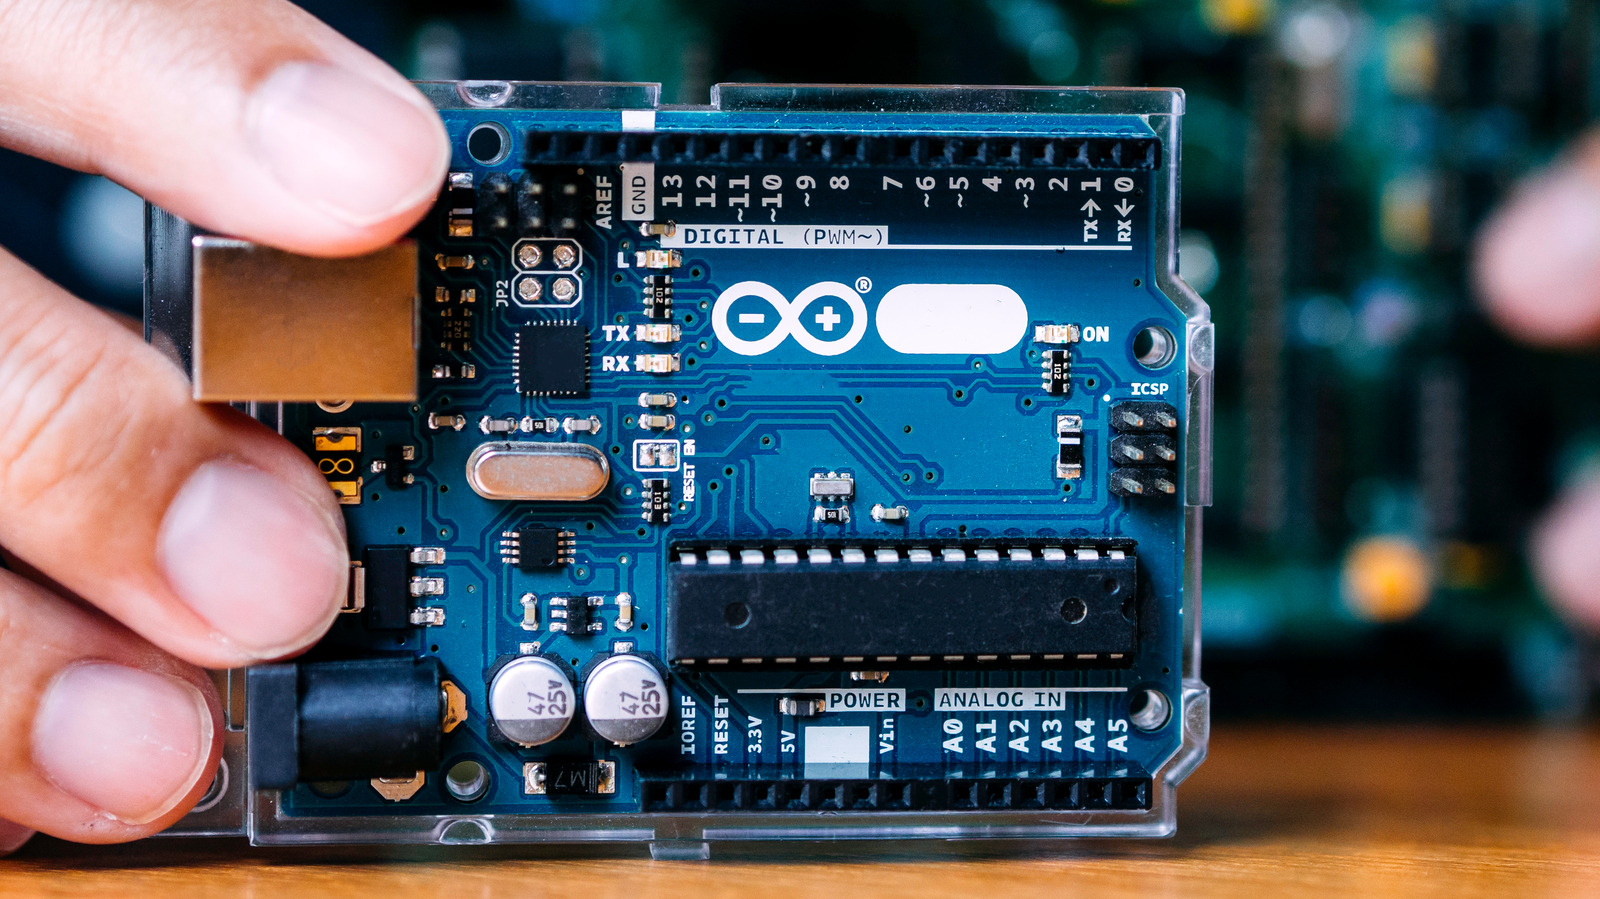 Primeros pasos con Arduino: una guía para principiantes